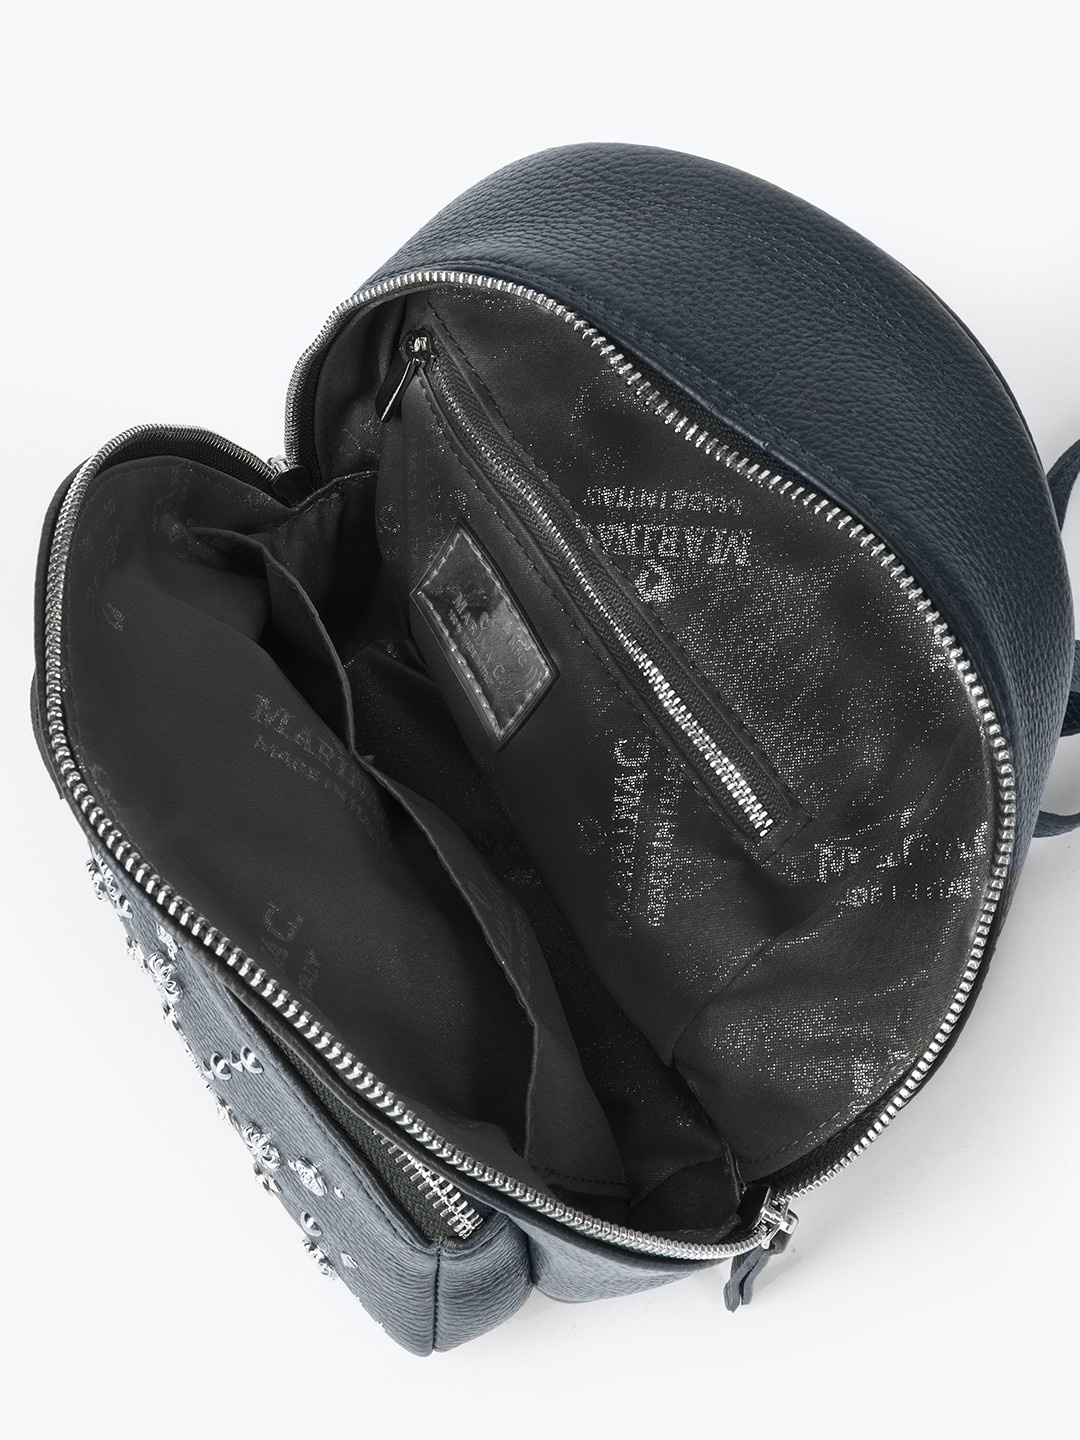 Фото Компактный рюкзак из мягкой кожи с декором из фигурных серебристых клепок Рюкзаки